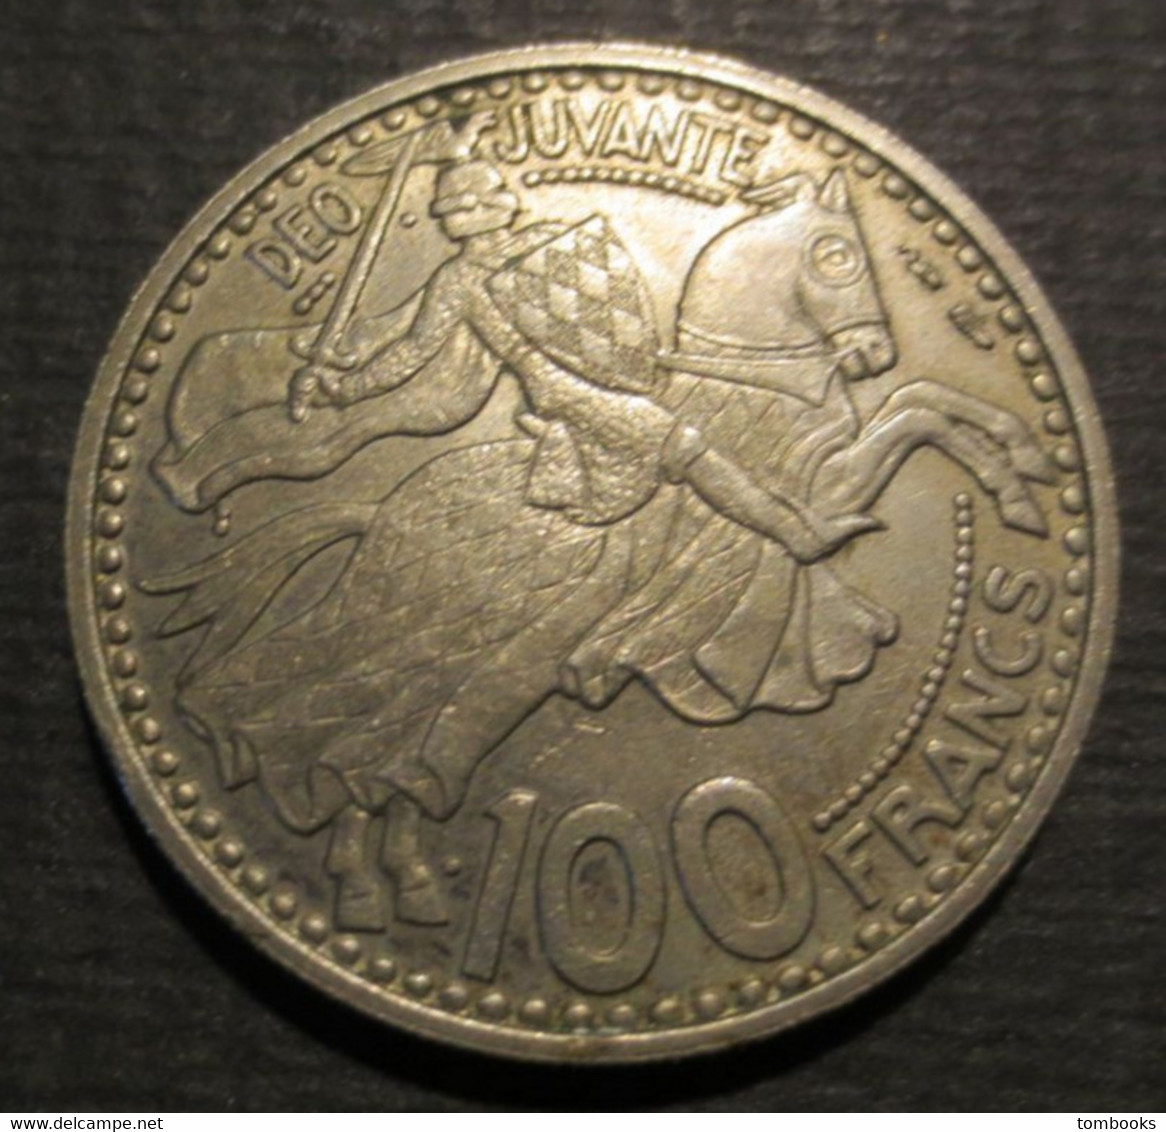 Monaco - Monnaie Ancienne - 100 Francs - Copper Nickel - Rainier III - Prince De Monaco - 1950 - - 1949-1956 Francos Antiguos